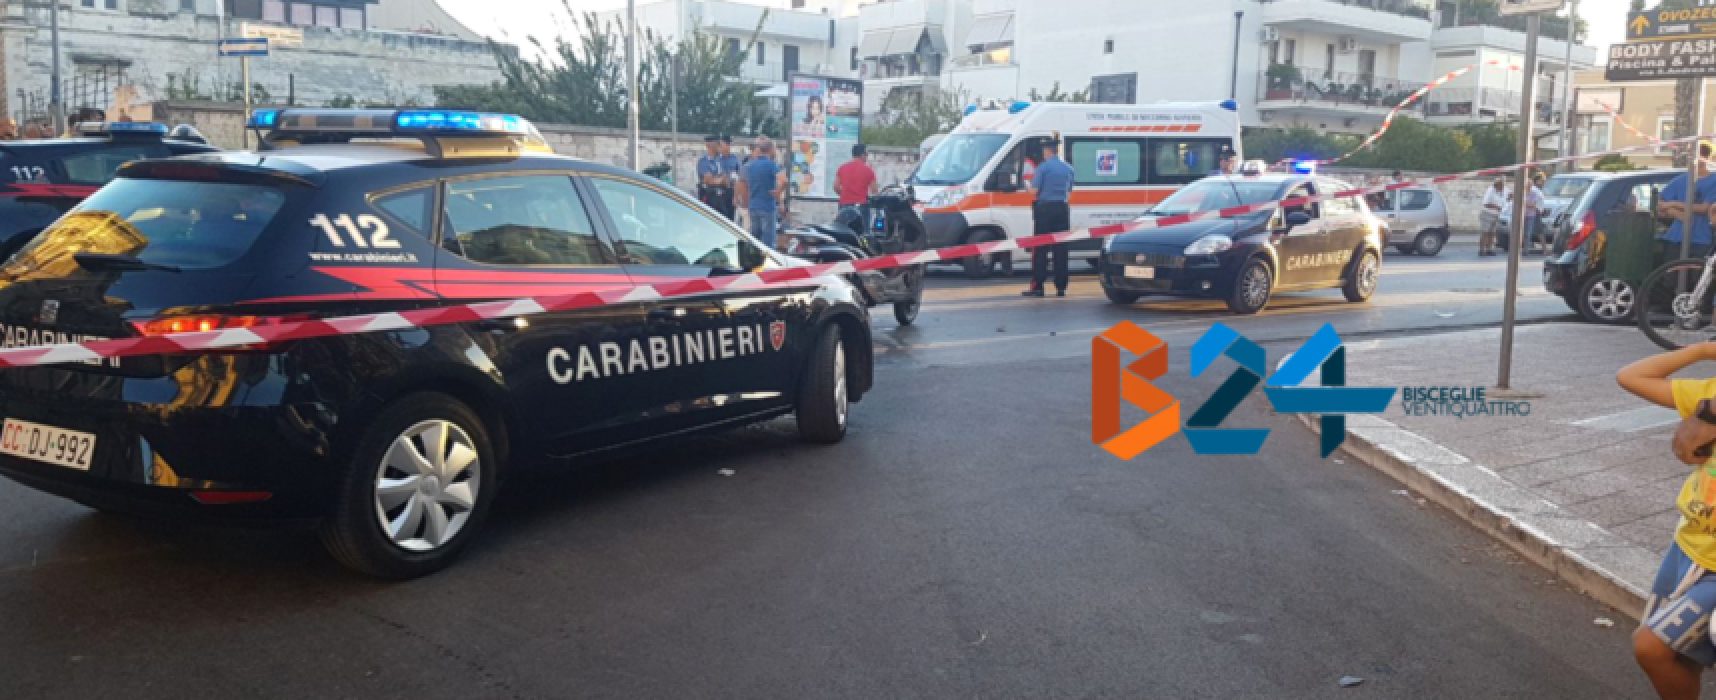 Inseguimento carabinieri-motociclo termina con incidente, fermati due biscegliesi